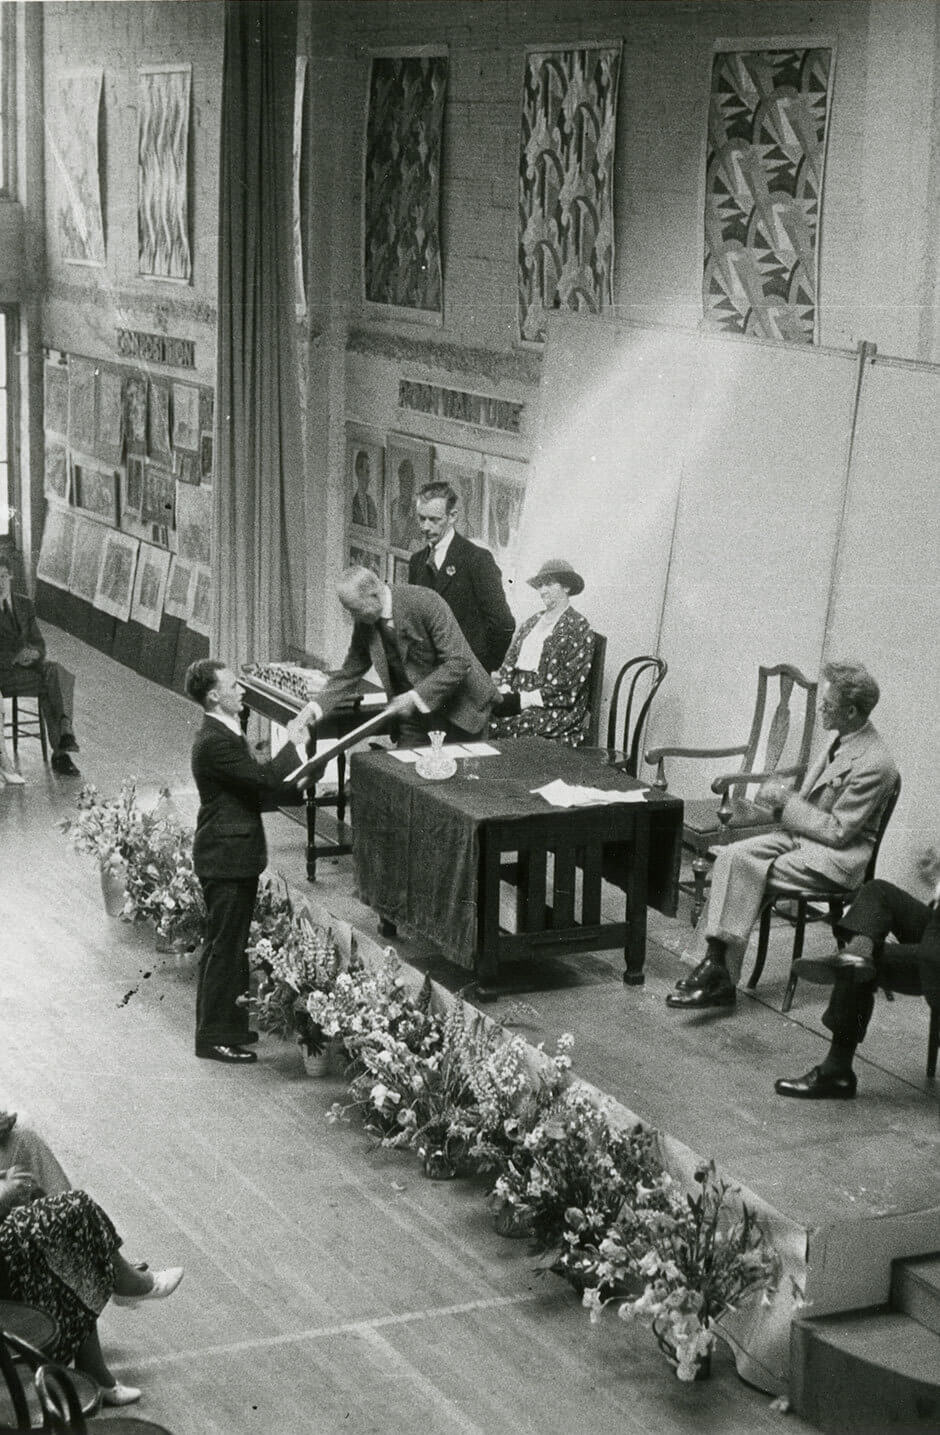 Art Canada Institute, Jock Macdonald, Graduation ceremony at the British Columbia College of Arts, c. 1934–35